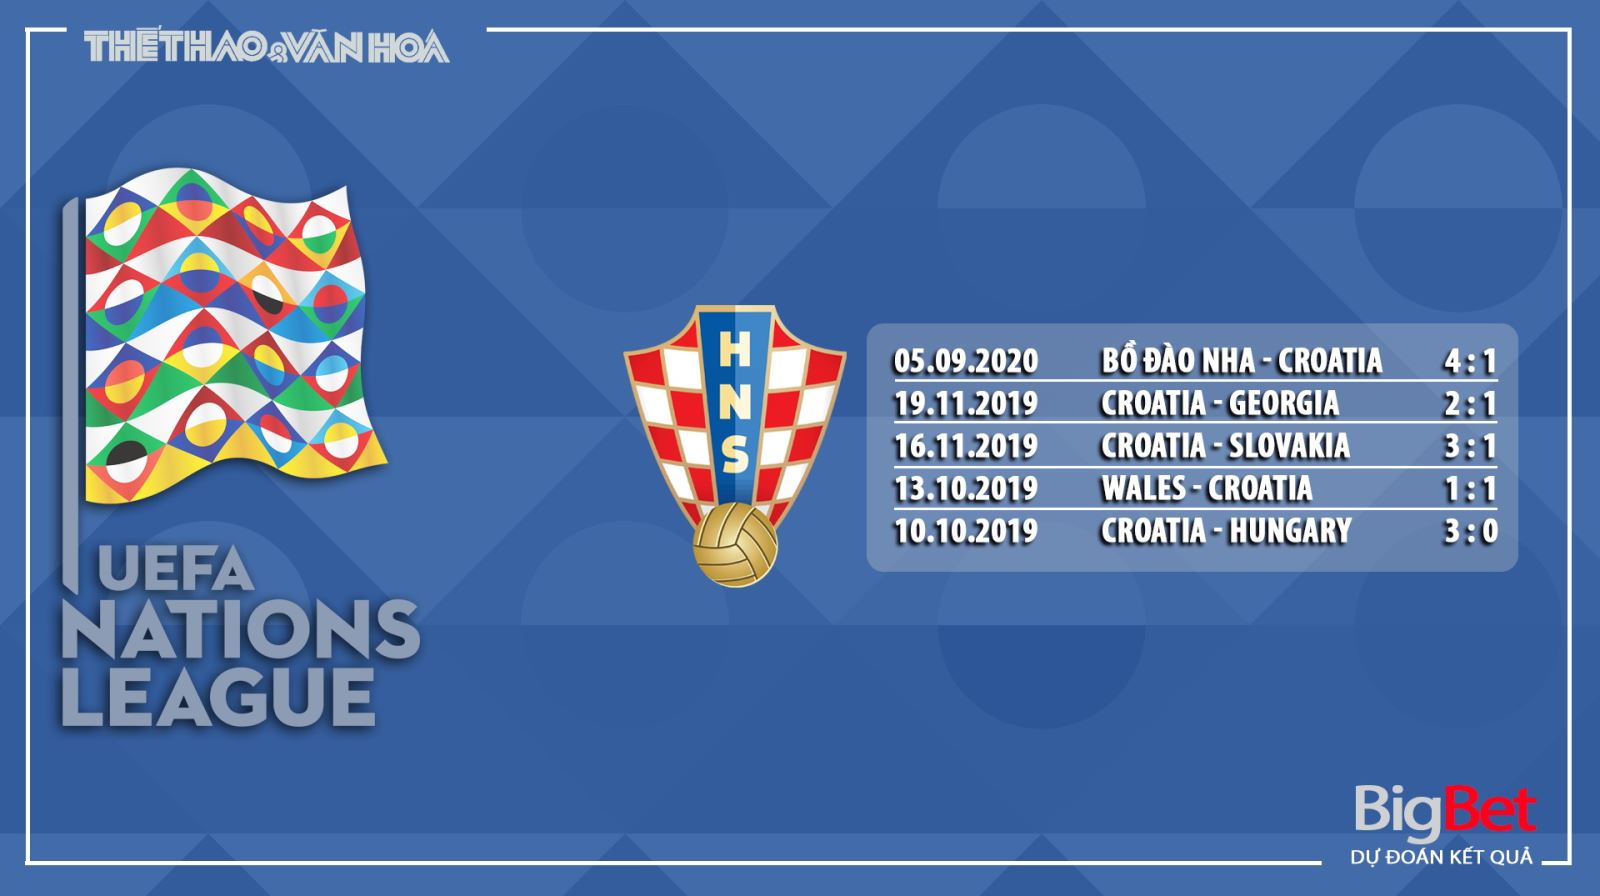 Nhận định bóng đá Pháp vs Croatia, Pháp, Croatia, trực tiếp bóng đá, trực tiếp Pháp vs Croatia, nhận định, kèo bóng đá, UEFA Nations League